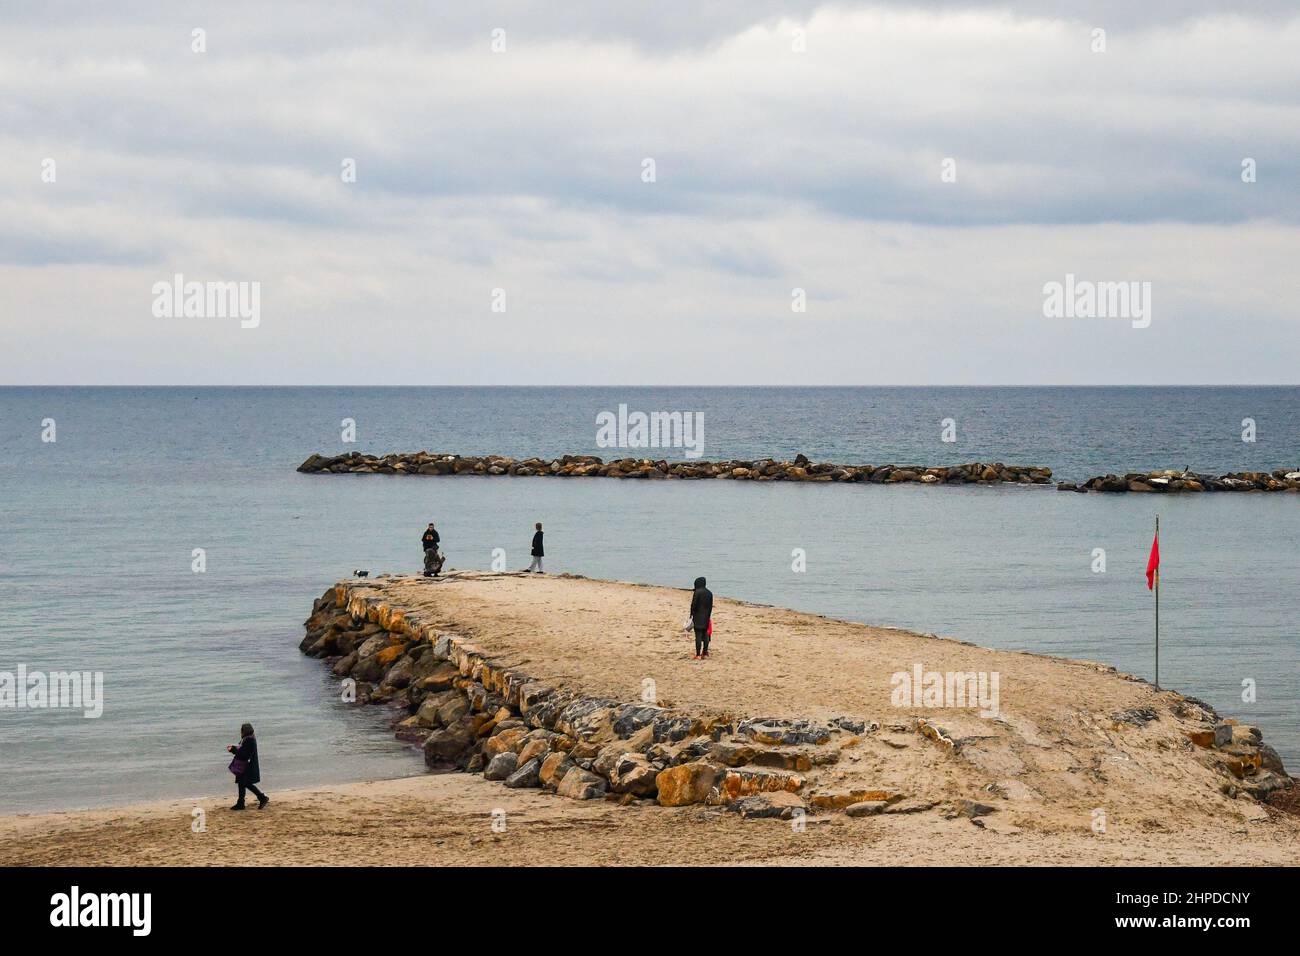 Vista ad alto angolo della spiaggia in inverno con persone in piedi su un frangiflutti rocciosi, Sanremo, Imperia, Liguria, Italia Foto Stock